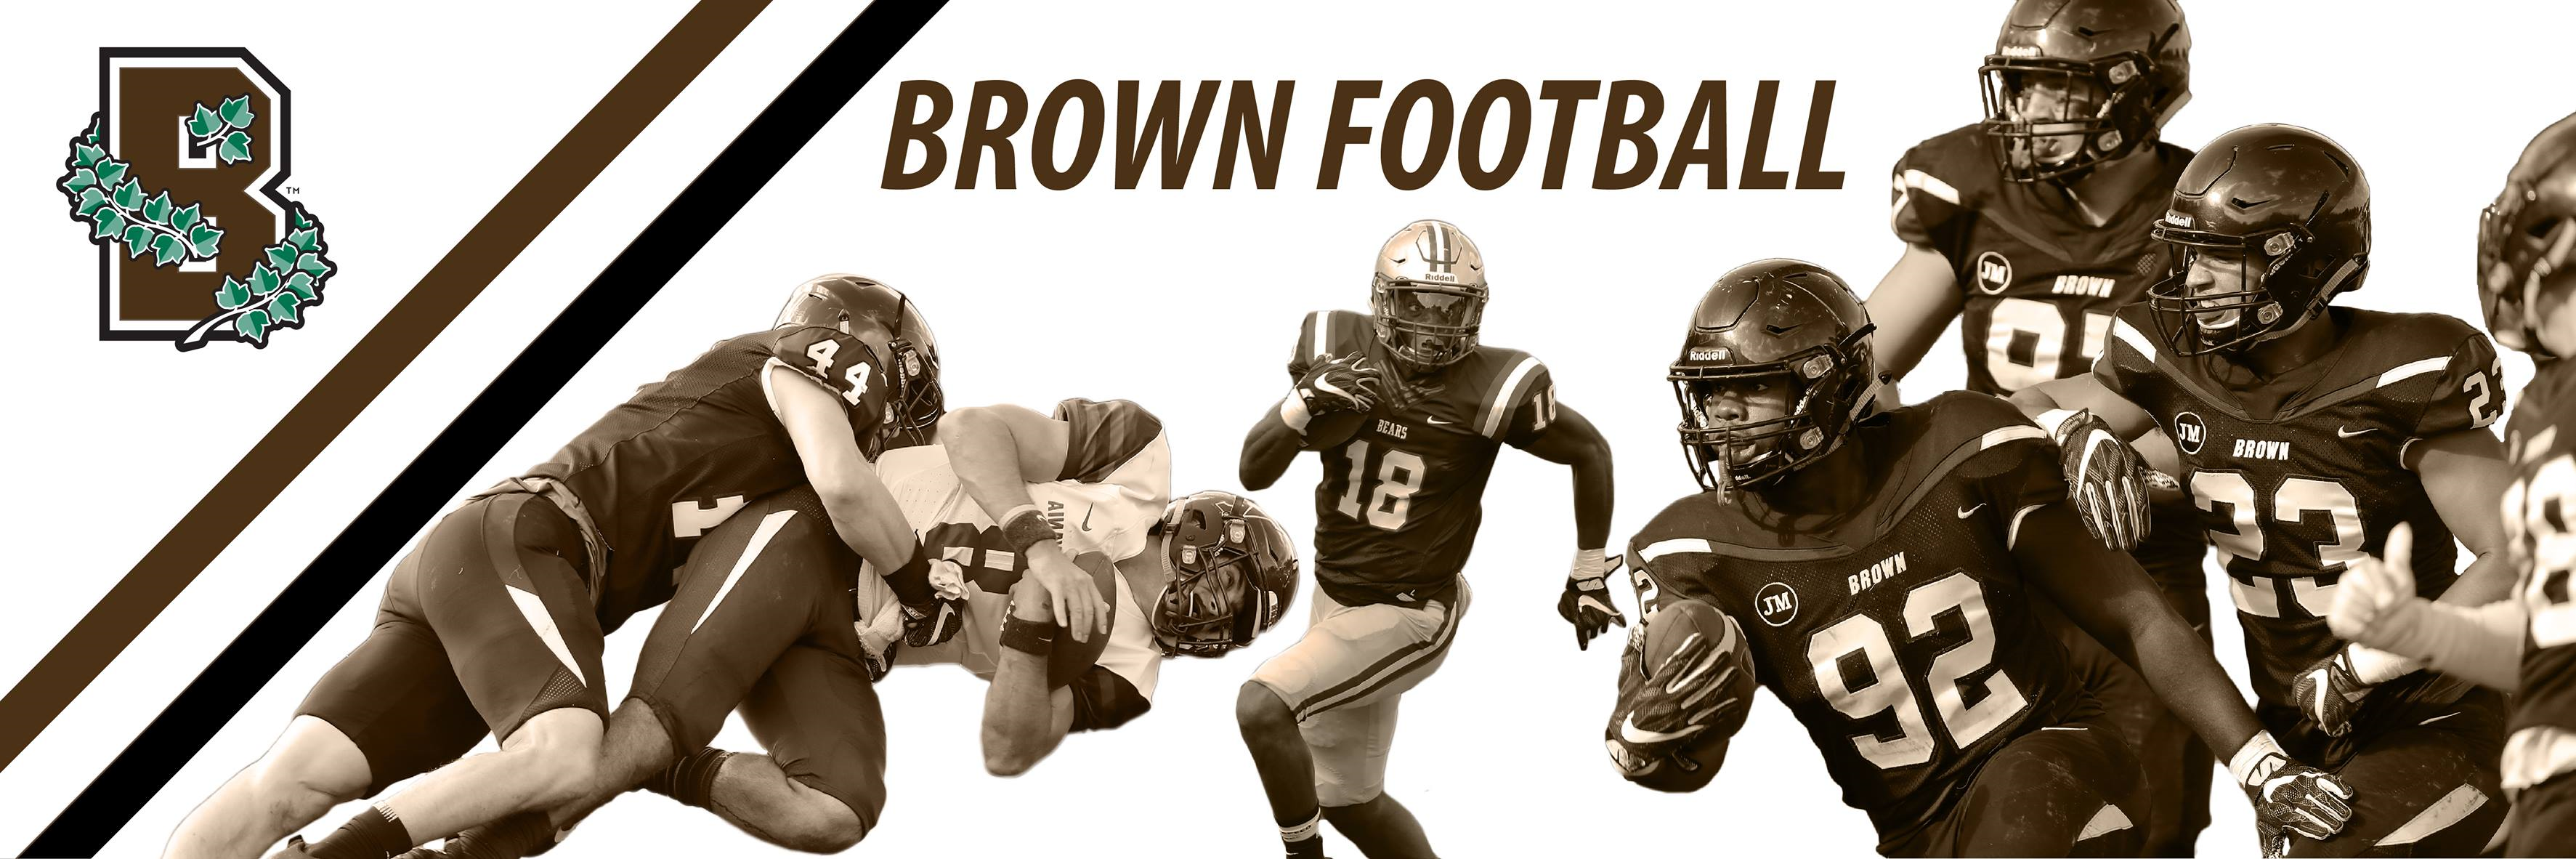 Brown vs. Harvard Football Game Brunonia